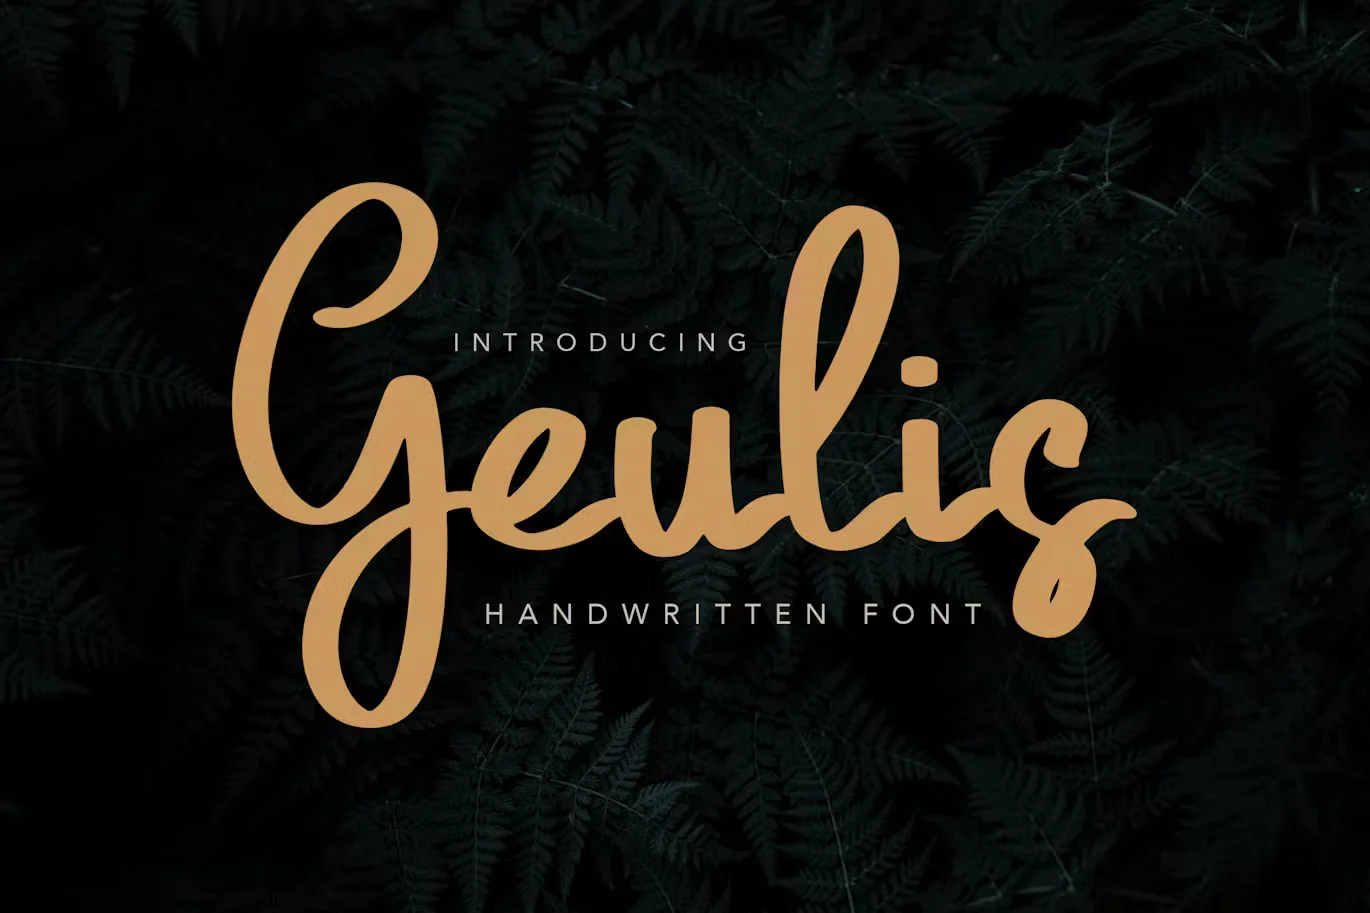 Geulis Stylish Font